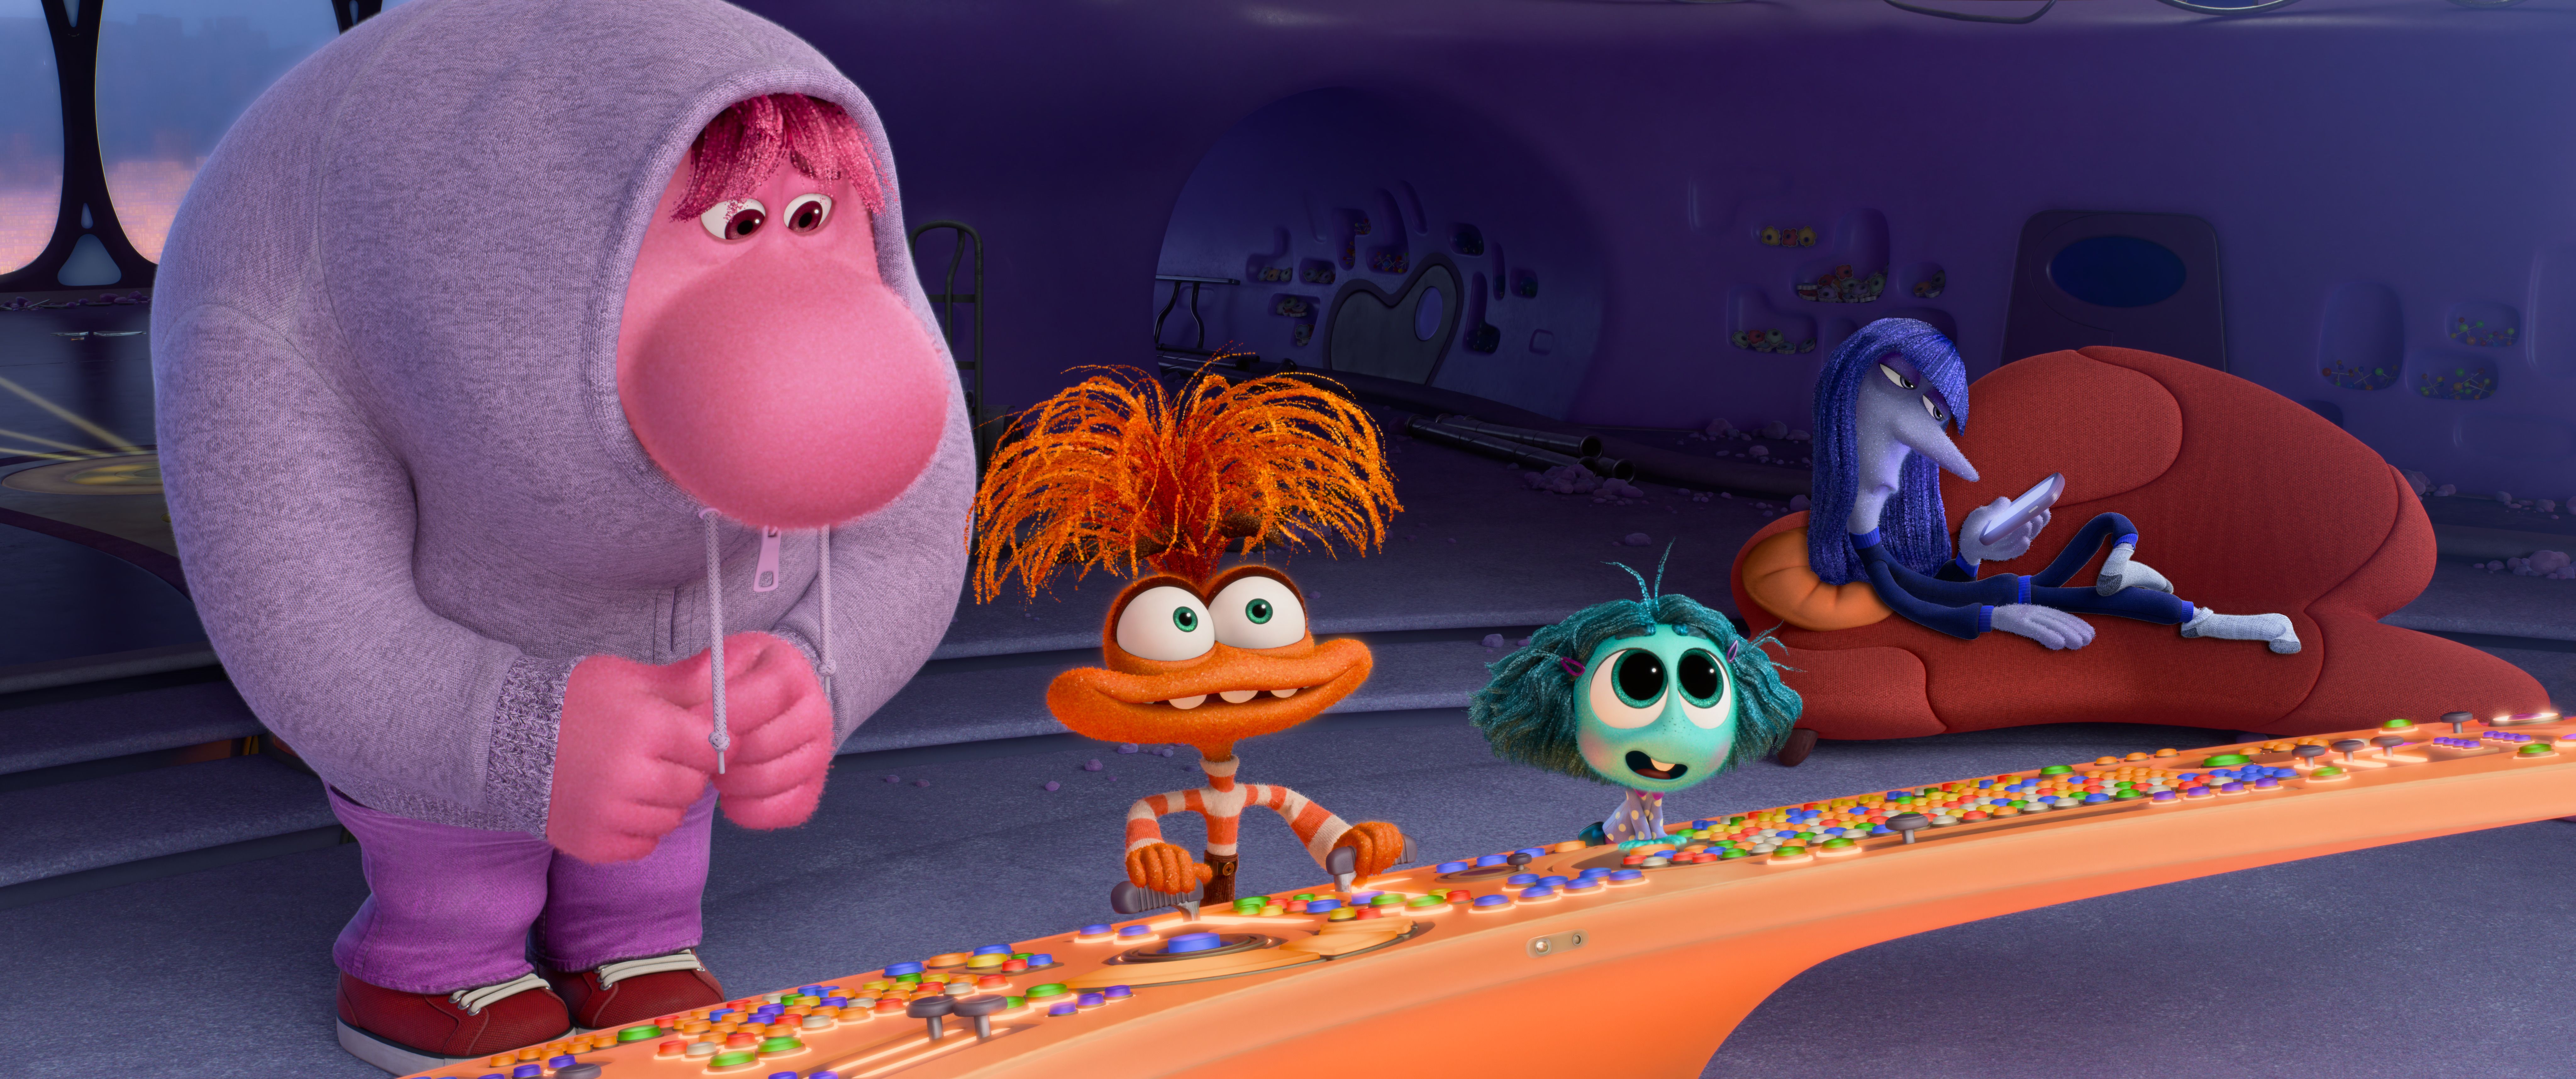 Самые неприятные сцены «Наизнанку 2» доказывают, что Pixar была права, вырезав эти две новые эмоции